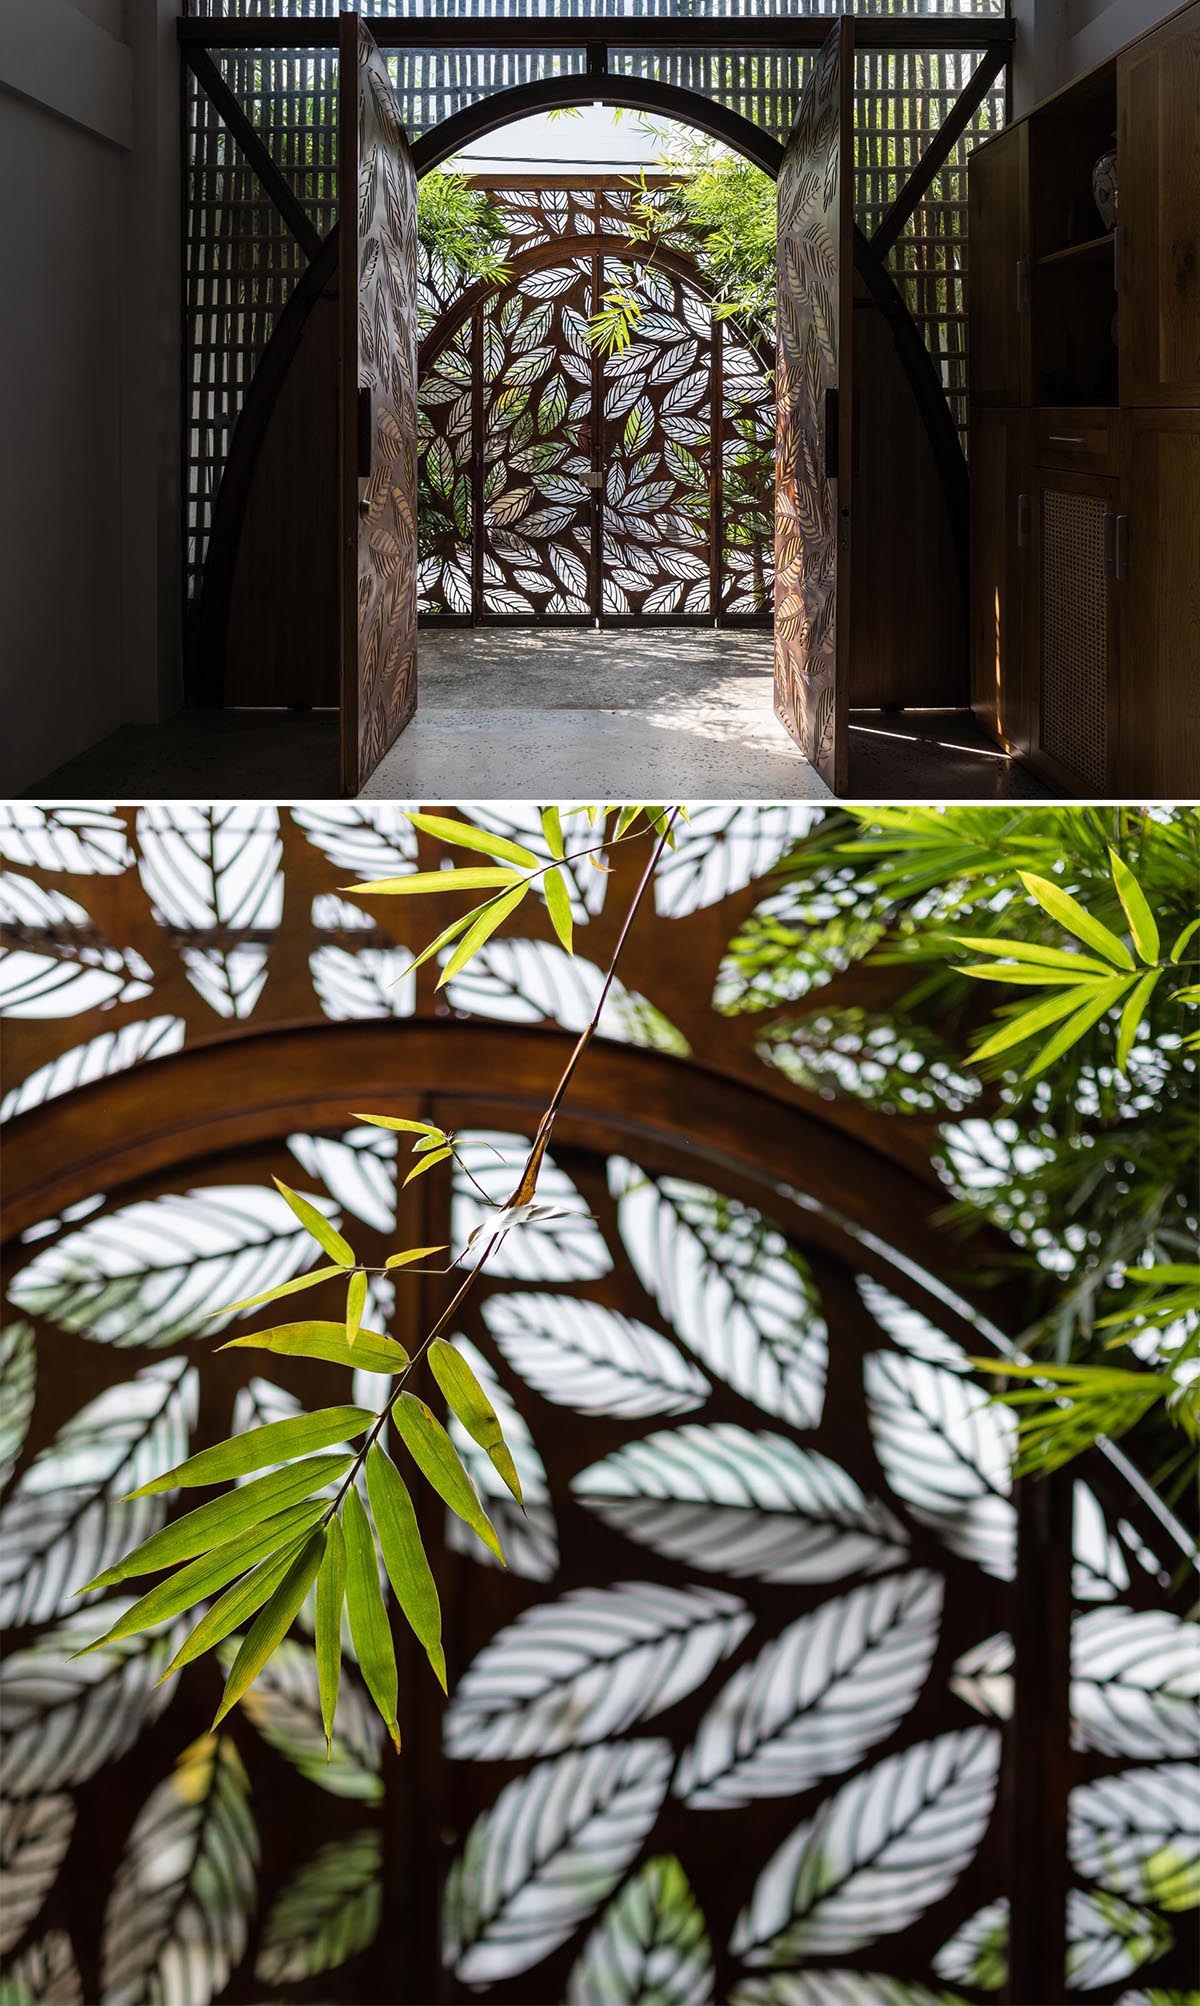 Металлические арочные двери с мотивом листьев встречают посетителей этого современного дома.